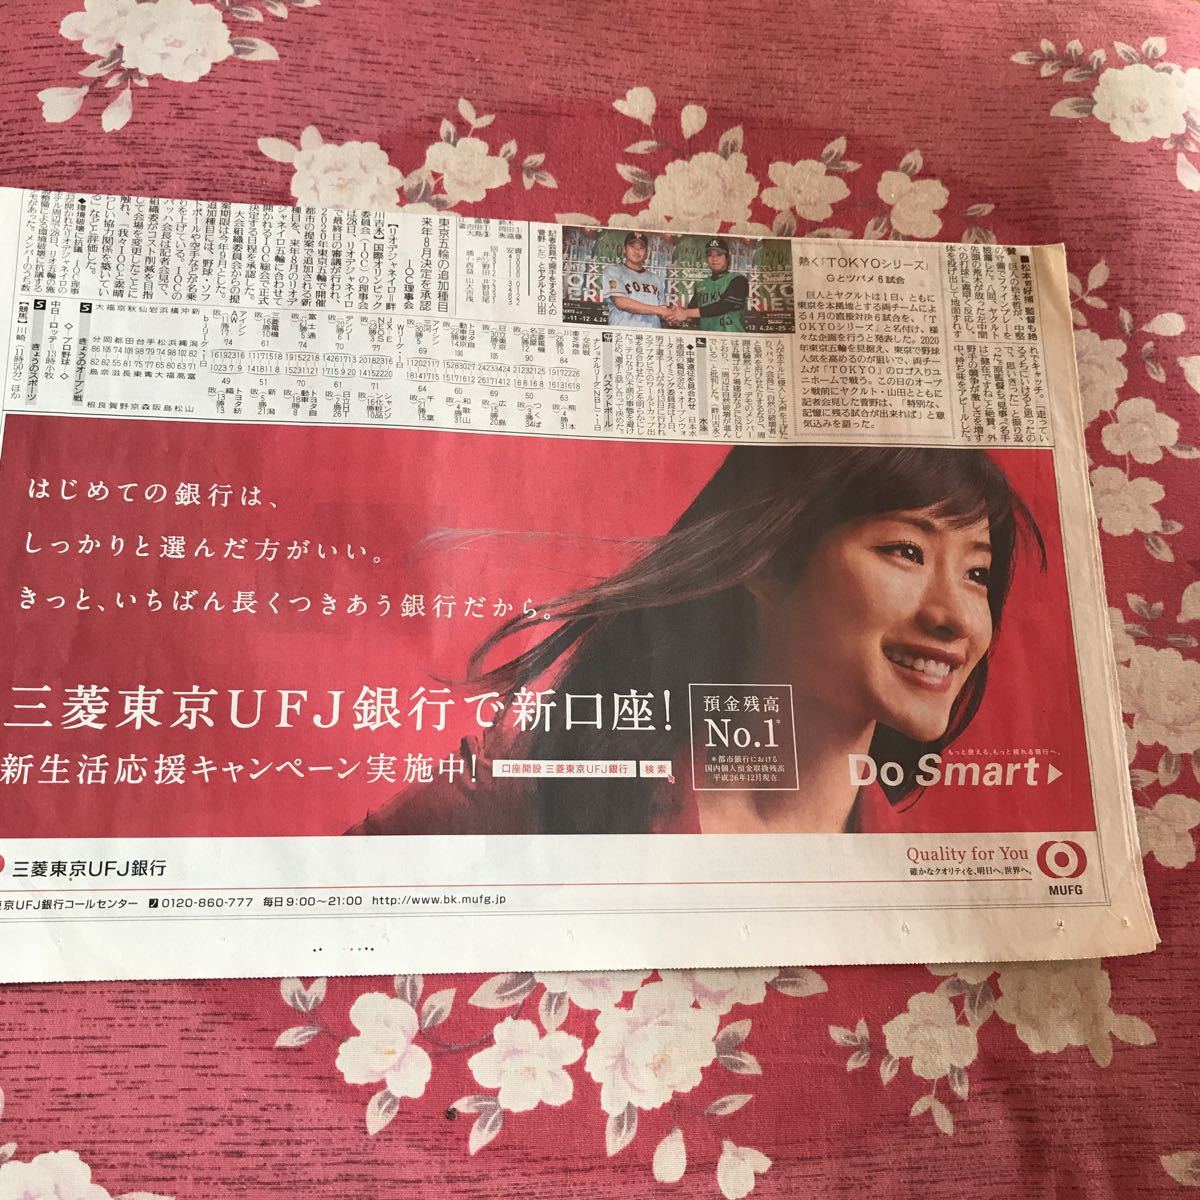  Ishihara Satomi Mitsubishi Tokyo UFJ Bank газета реклама 4 листов 2013 год 2014 год 2015 год .. газета вырезки 